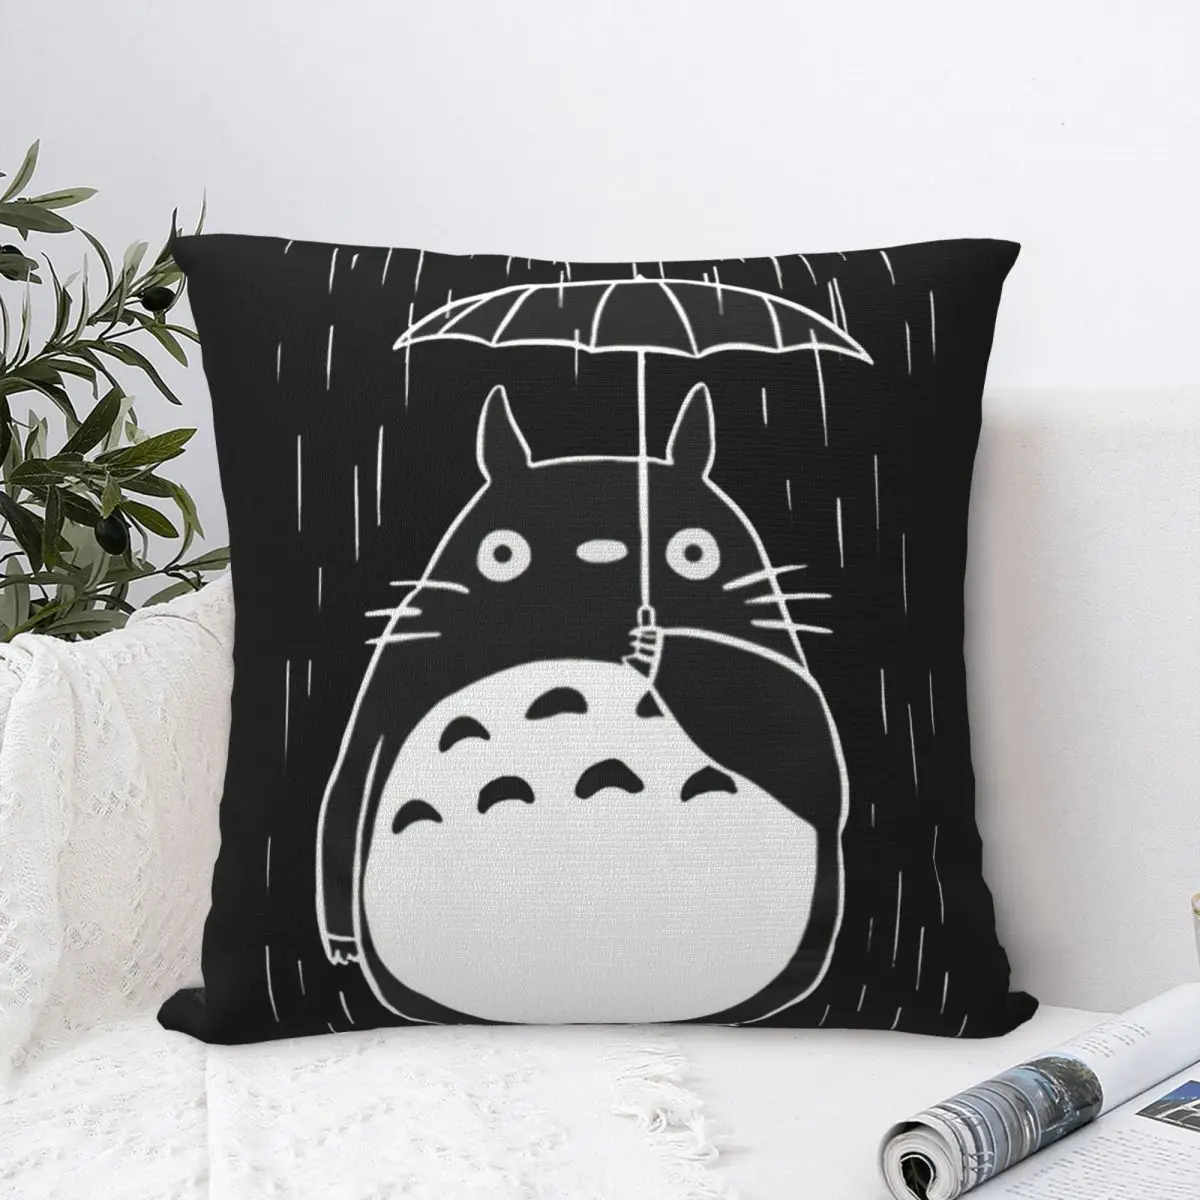 

Квадратная наволочка KawaiI Totoro из полиэстера, наволочка для подушки, бархатная Наволочка на молнии, декоративная комфортная наволочка для дома, гостиной